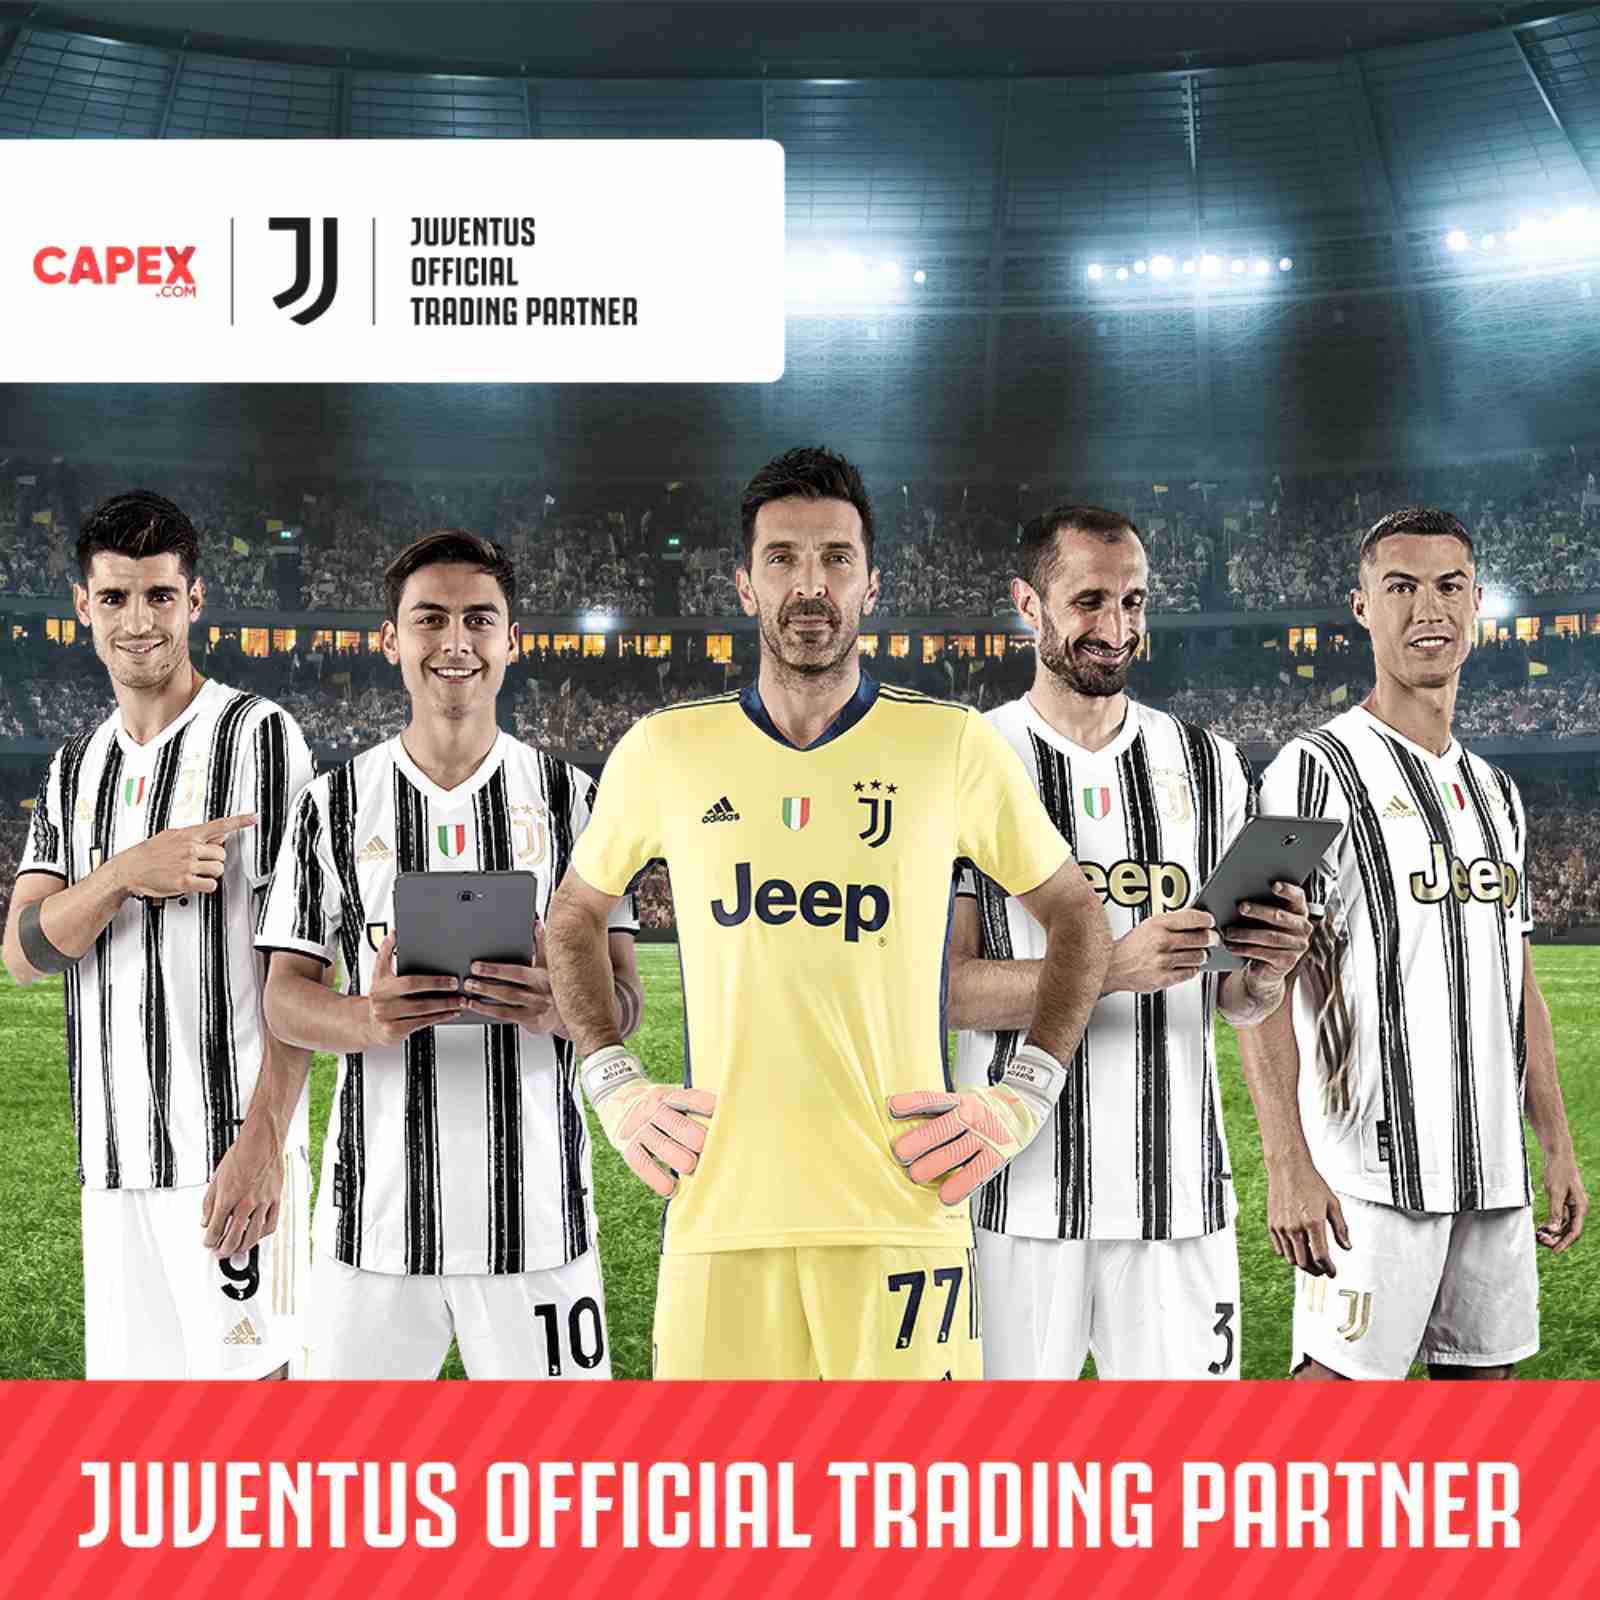 Capex.com sponsor Juventus